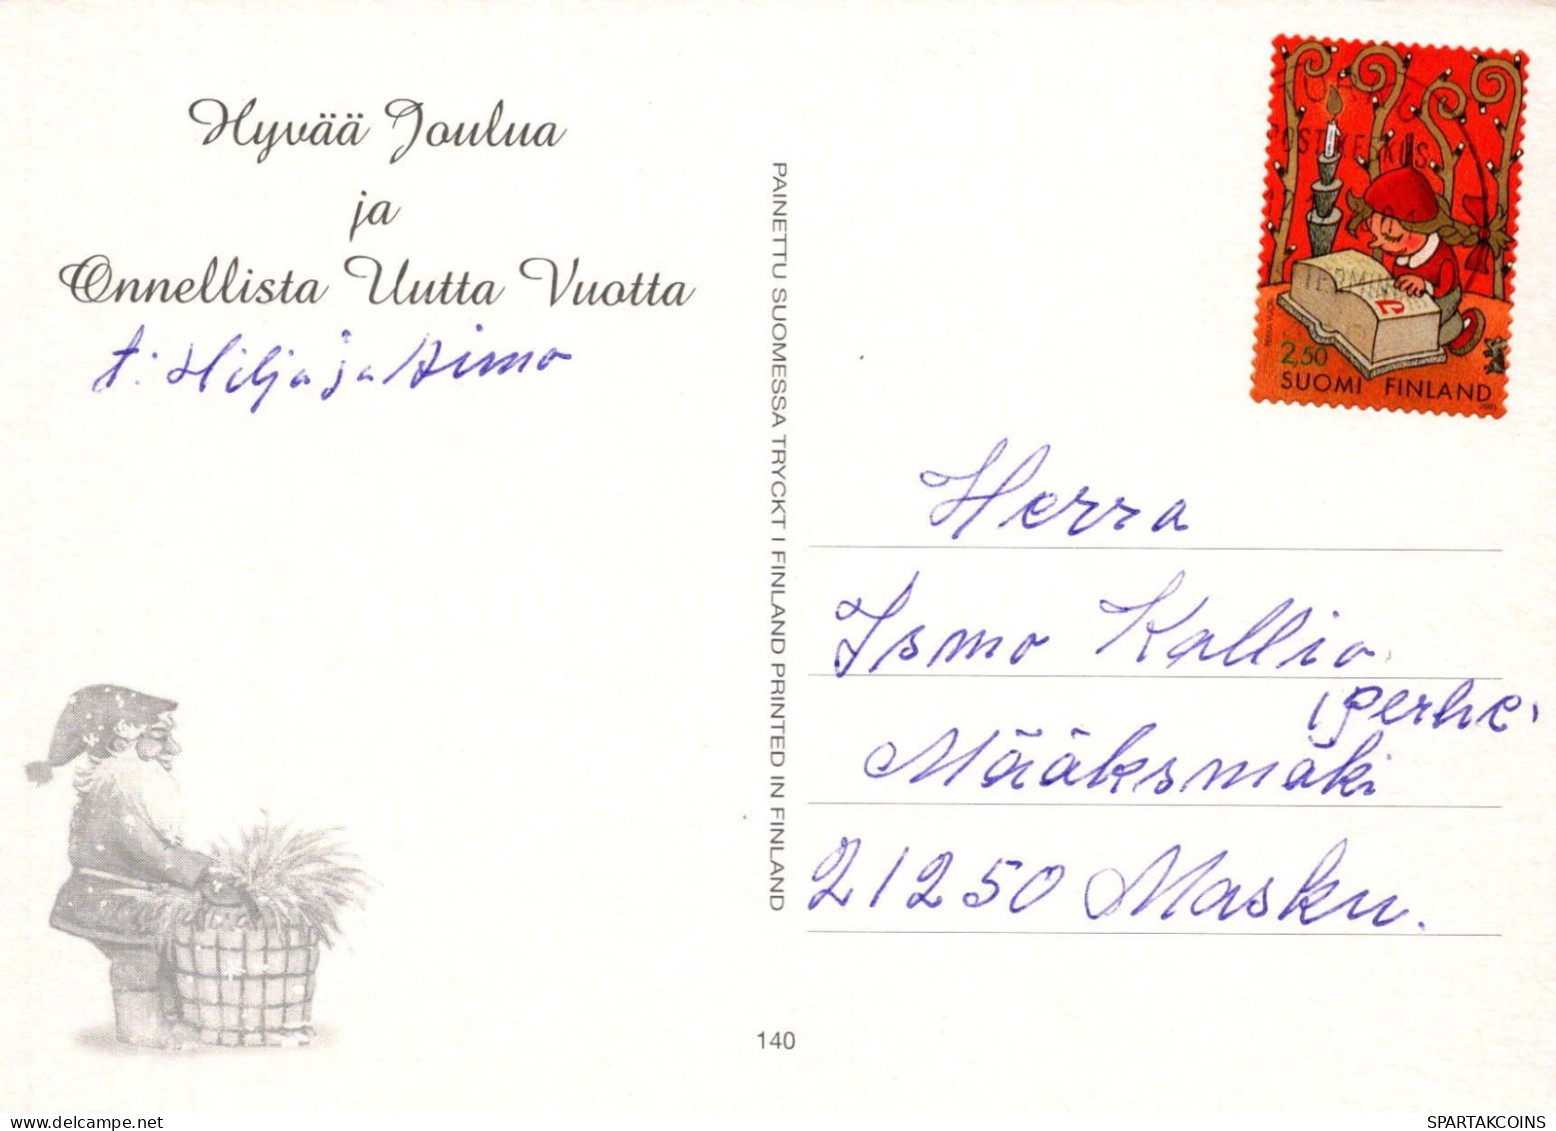 PAPÁ NOEL Feliz Año Navidad Vintage Tarjeta Postal CPSM #PBL190.ES - Santa Claus